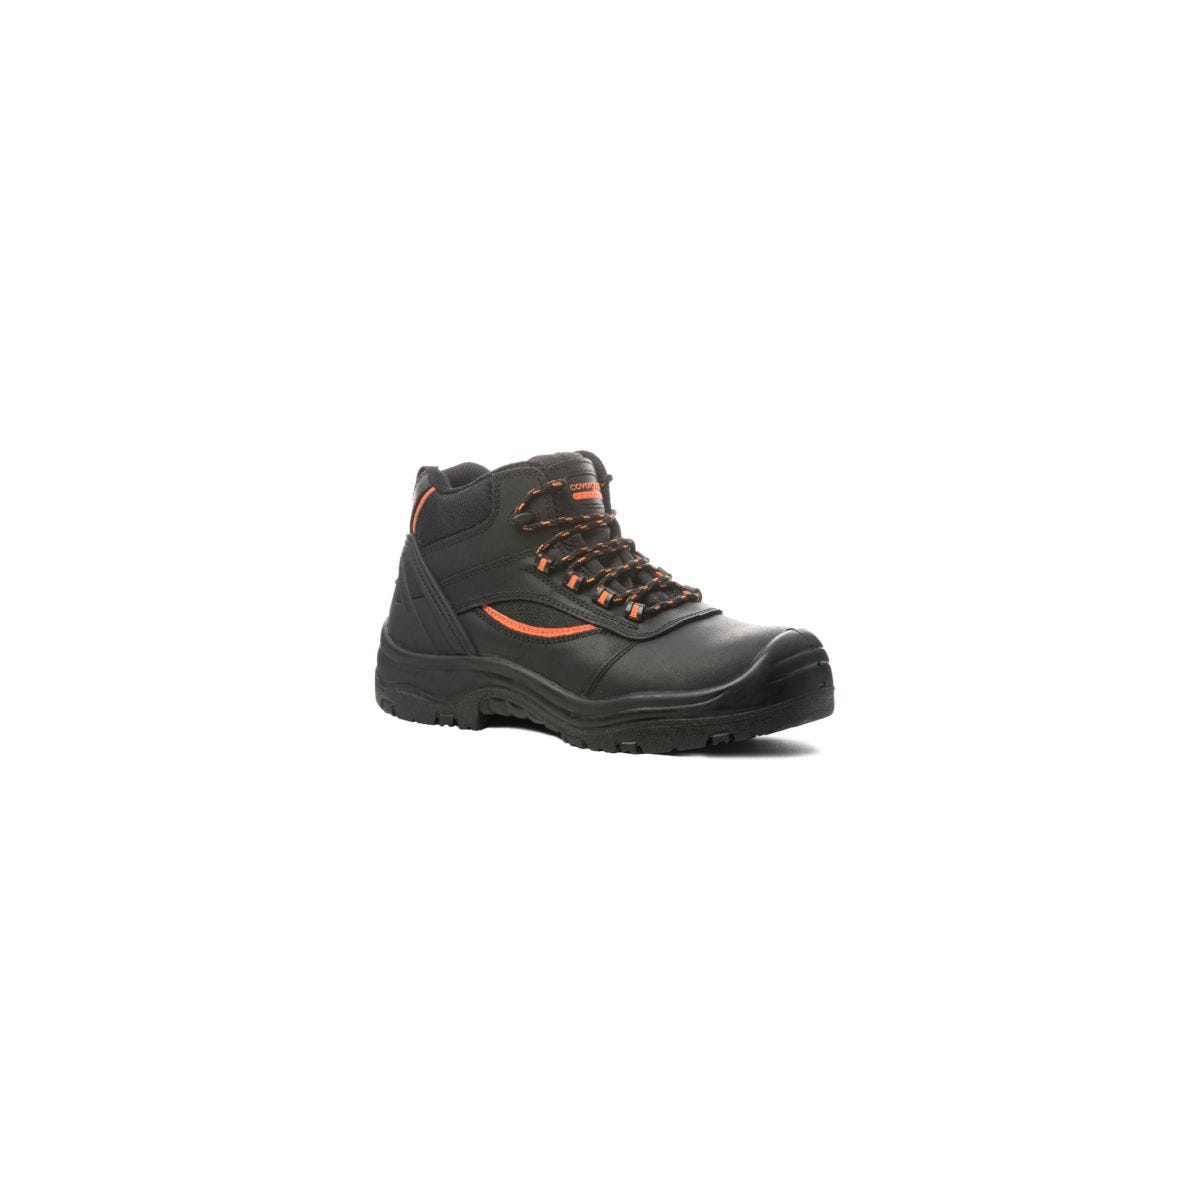 Chaussure de sécurité PEARL HIGH haute noire S3 SRC - COVERGUARD - Taille 43 0